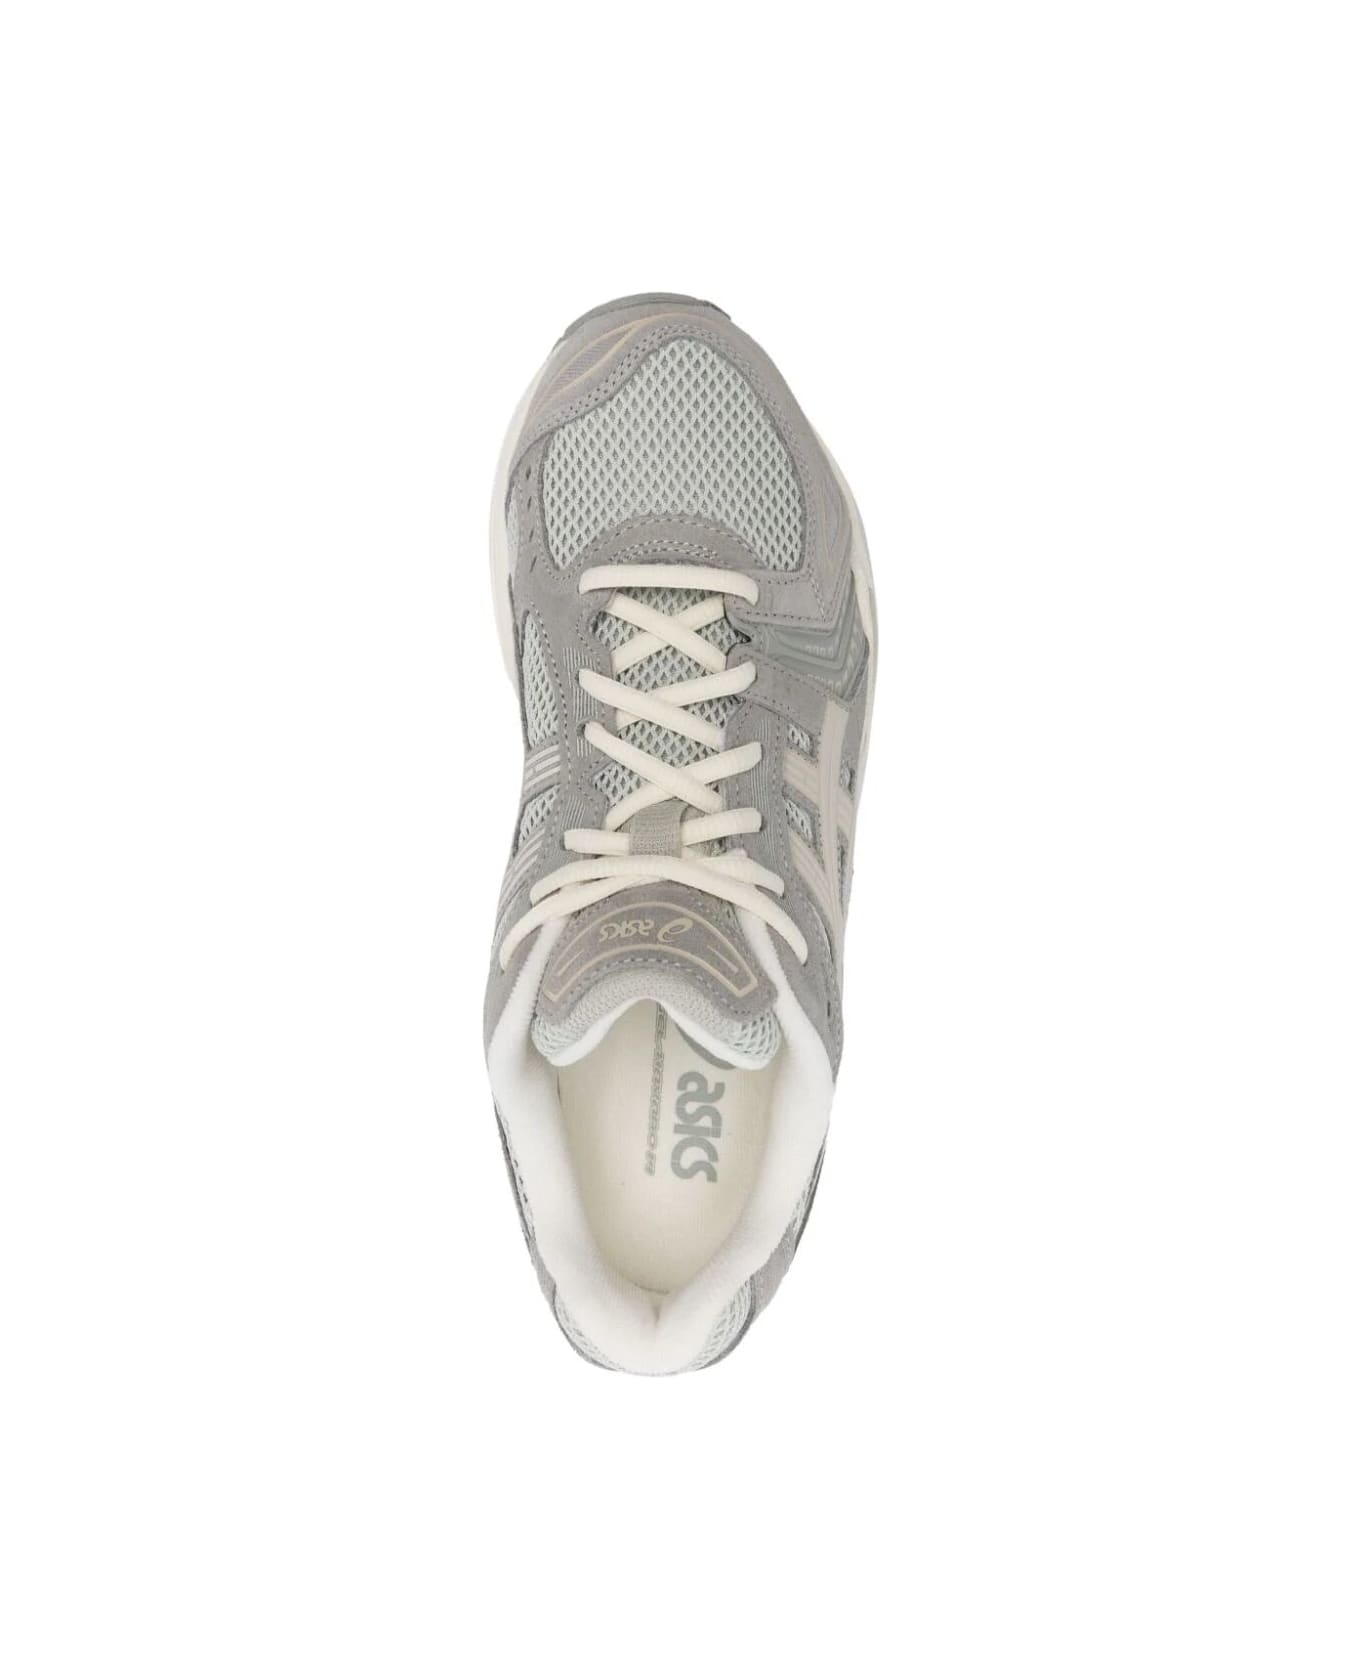 Asics Gel Kayano 14 Sneakers - White Sage Smoke Grey